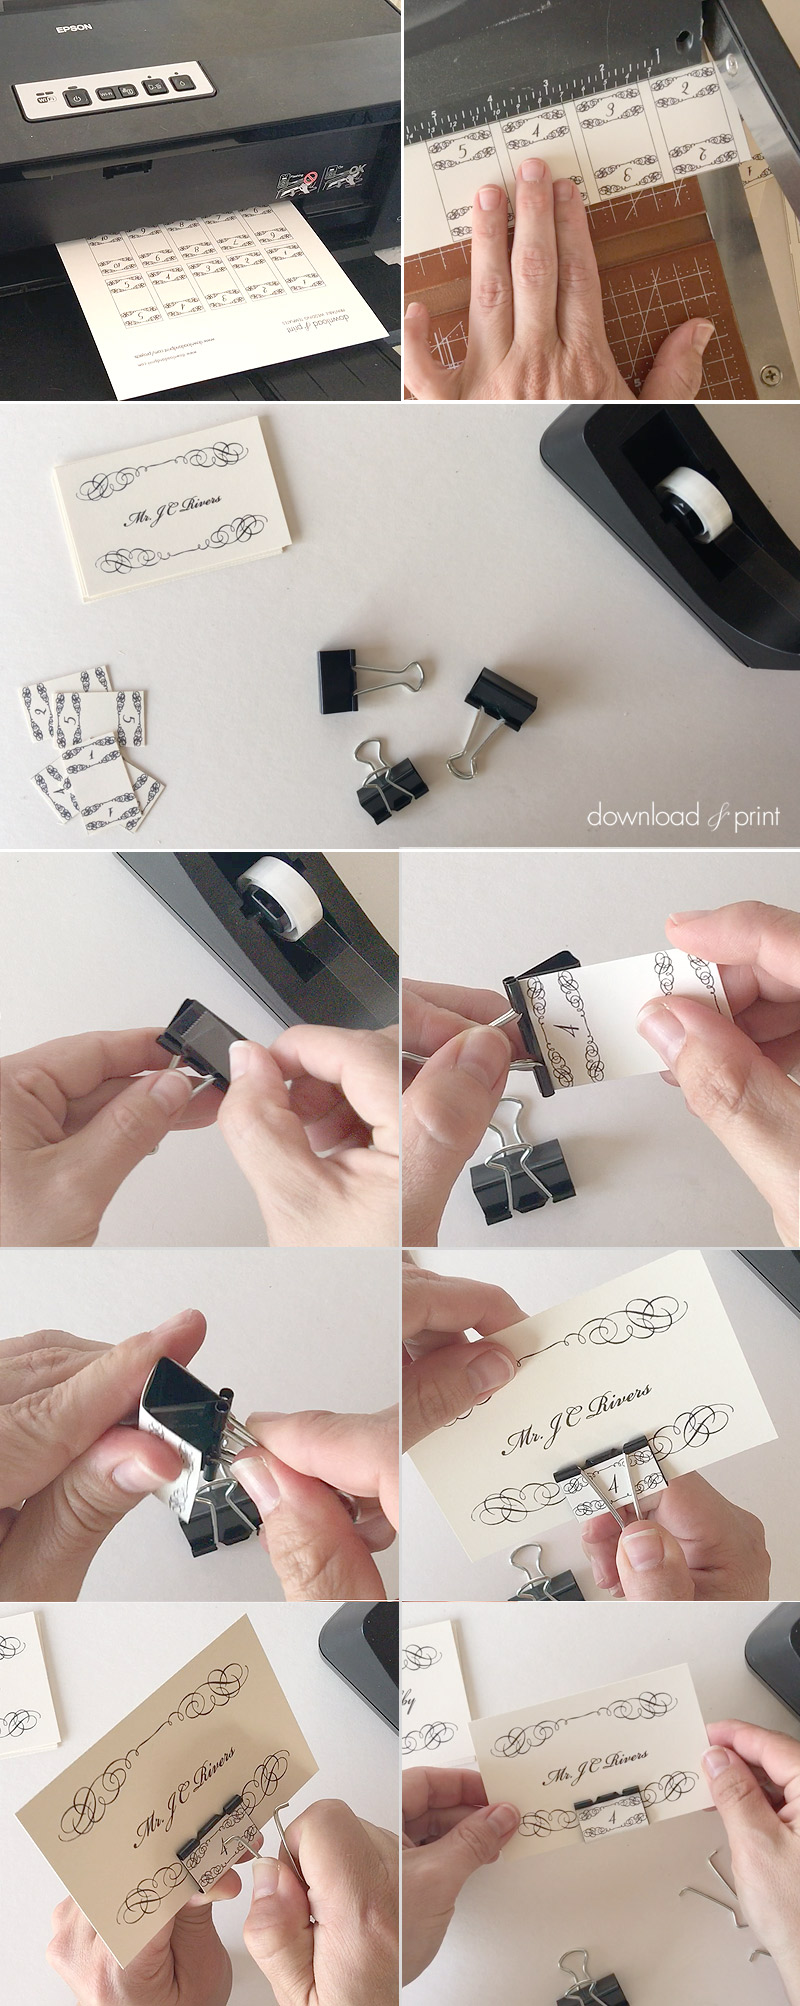 DIY elegant binder clip place cards | Download & Print